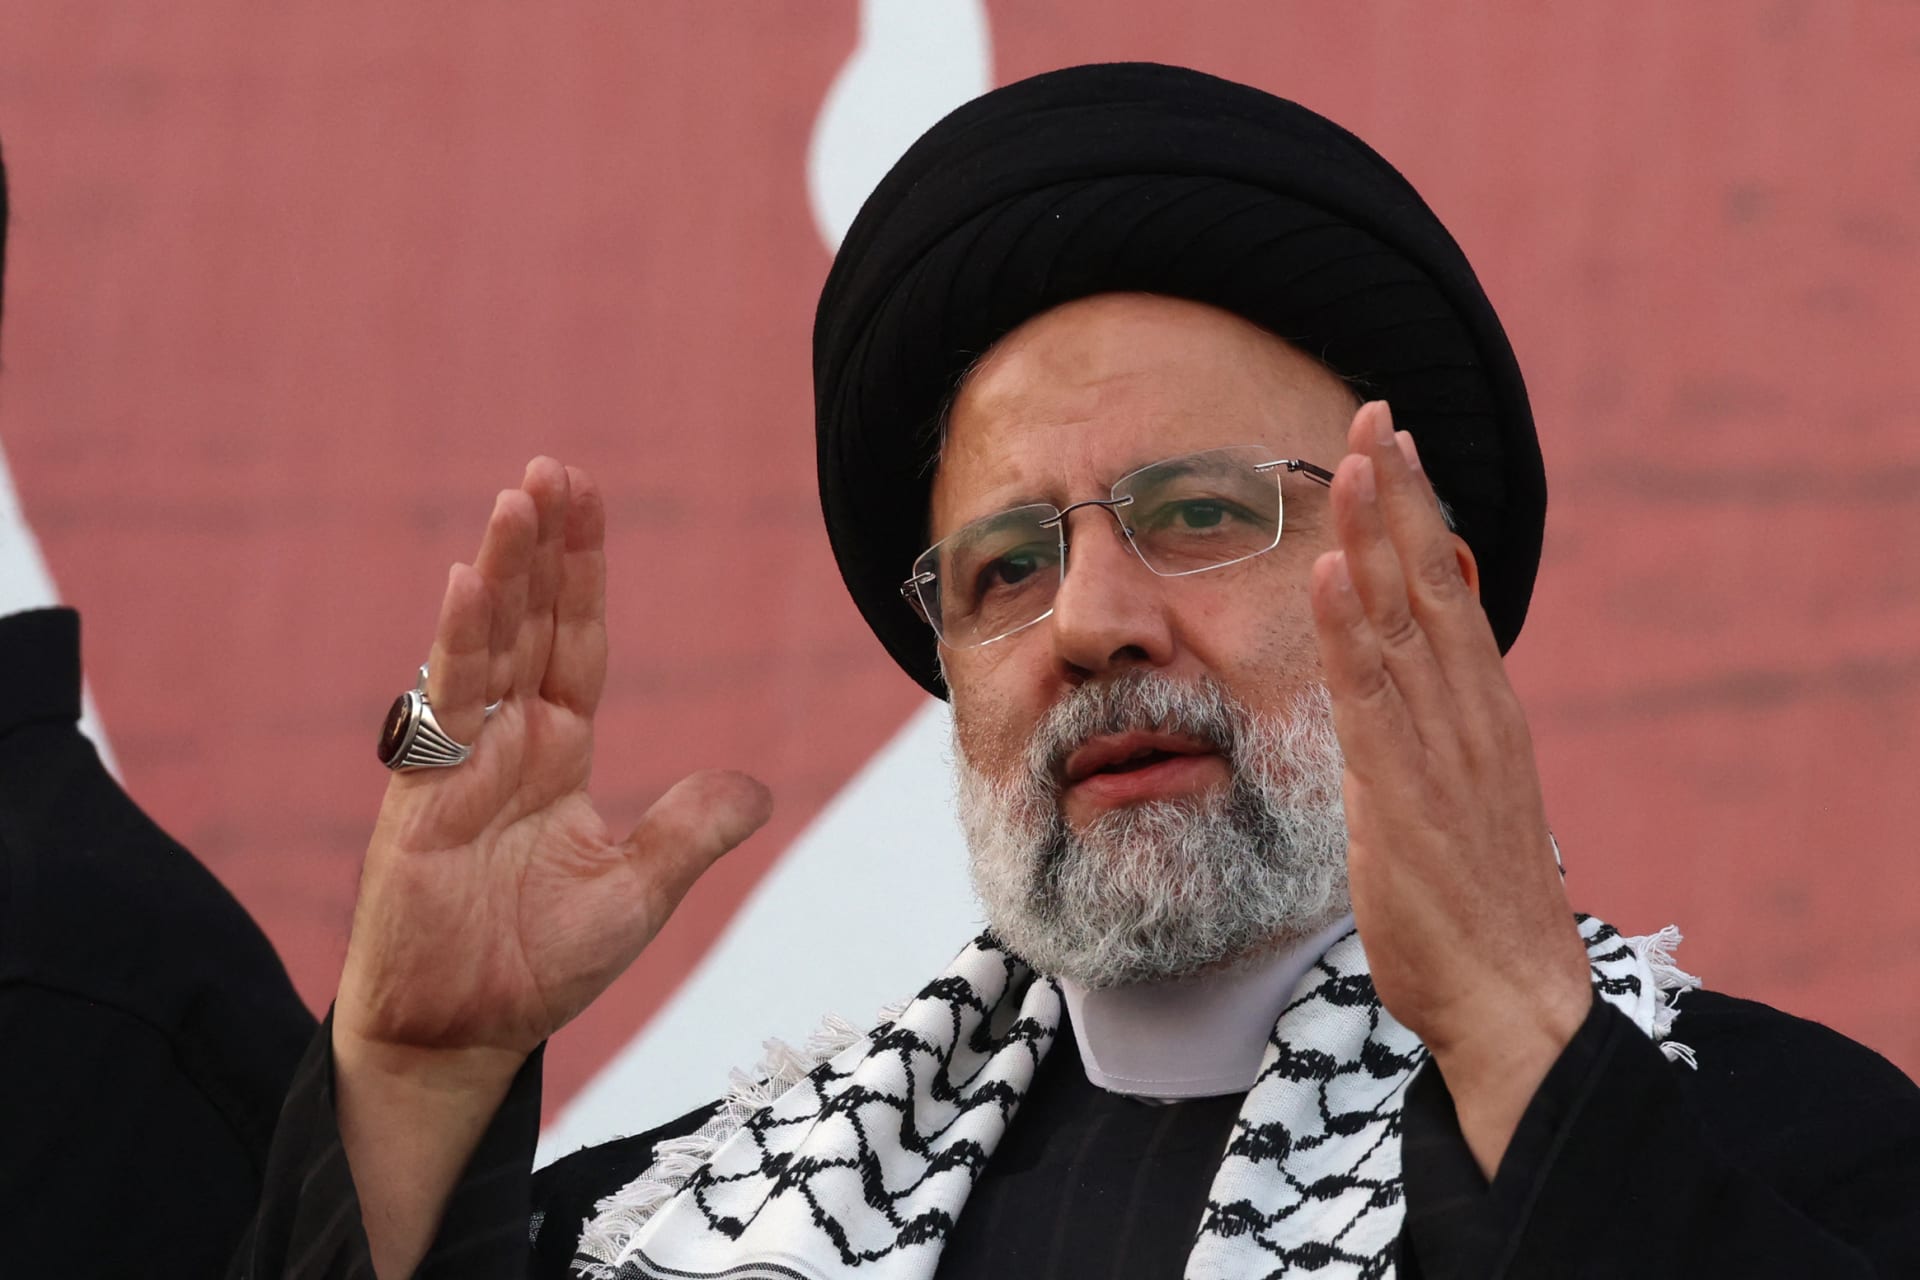 الرئيس الإيراني بقمة الرياض: اجتمعنا هنا جميعا لـ"إنقاذ الفلسطينيين".. وغزة صراع "بين محورين"